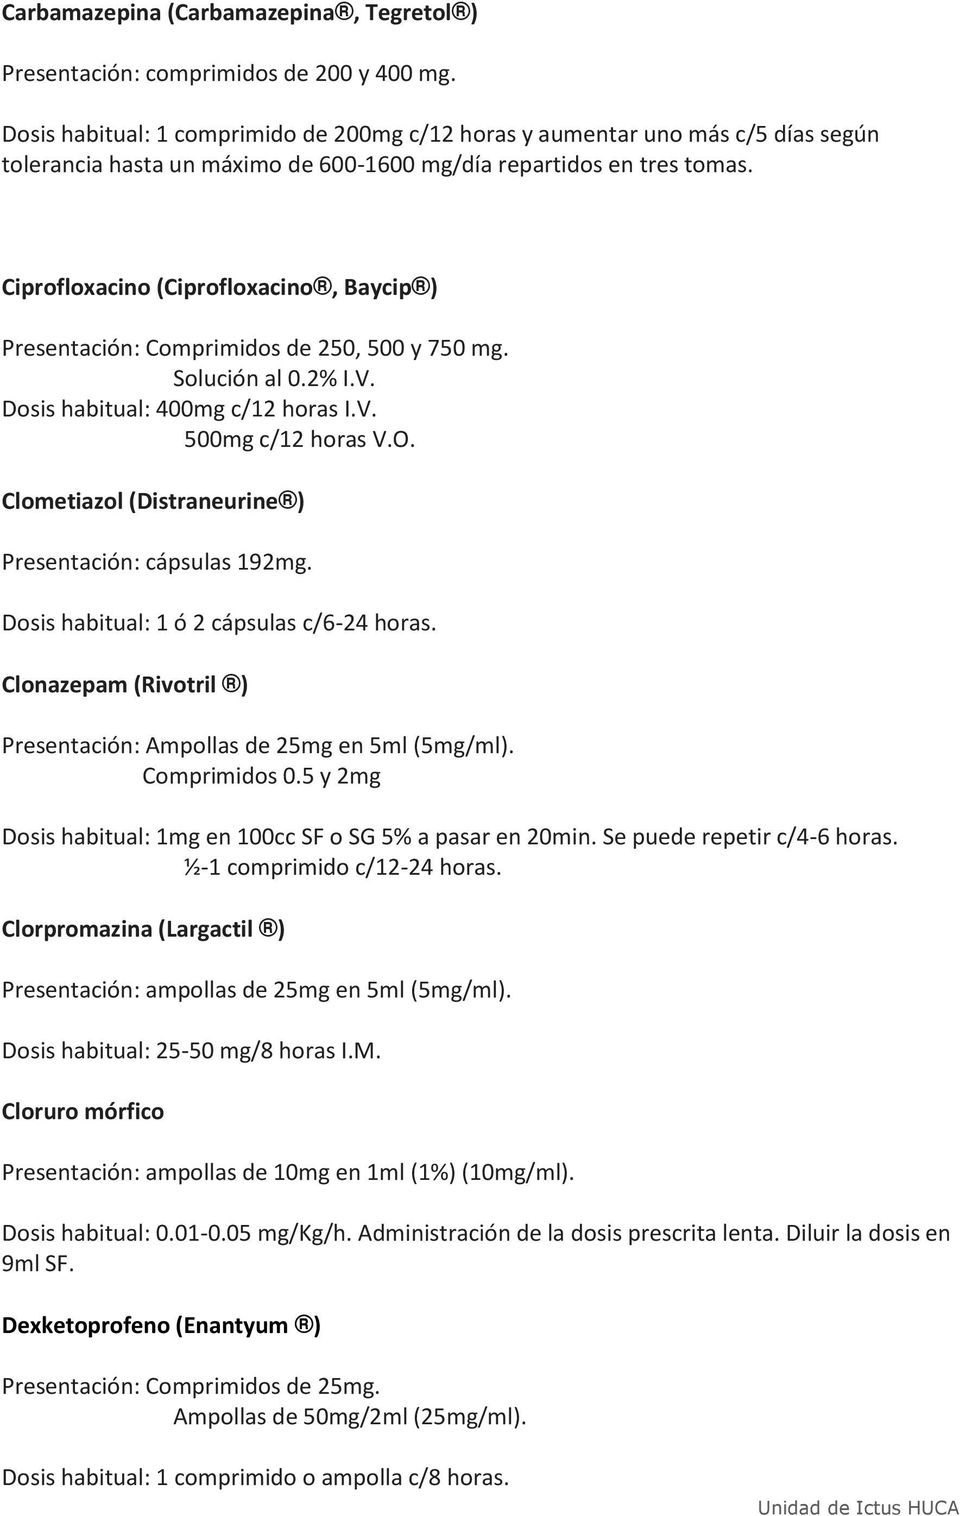 Ciprofloxacino (Ciprofloxacino, Baycip ) Presentación: Comprimidos de 250, 500 y 750 mg. Solución al 0.2% I.V. Dosis habitual: 400mg c/12 horas I.V. 500mg c/12 horas V.O.